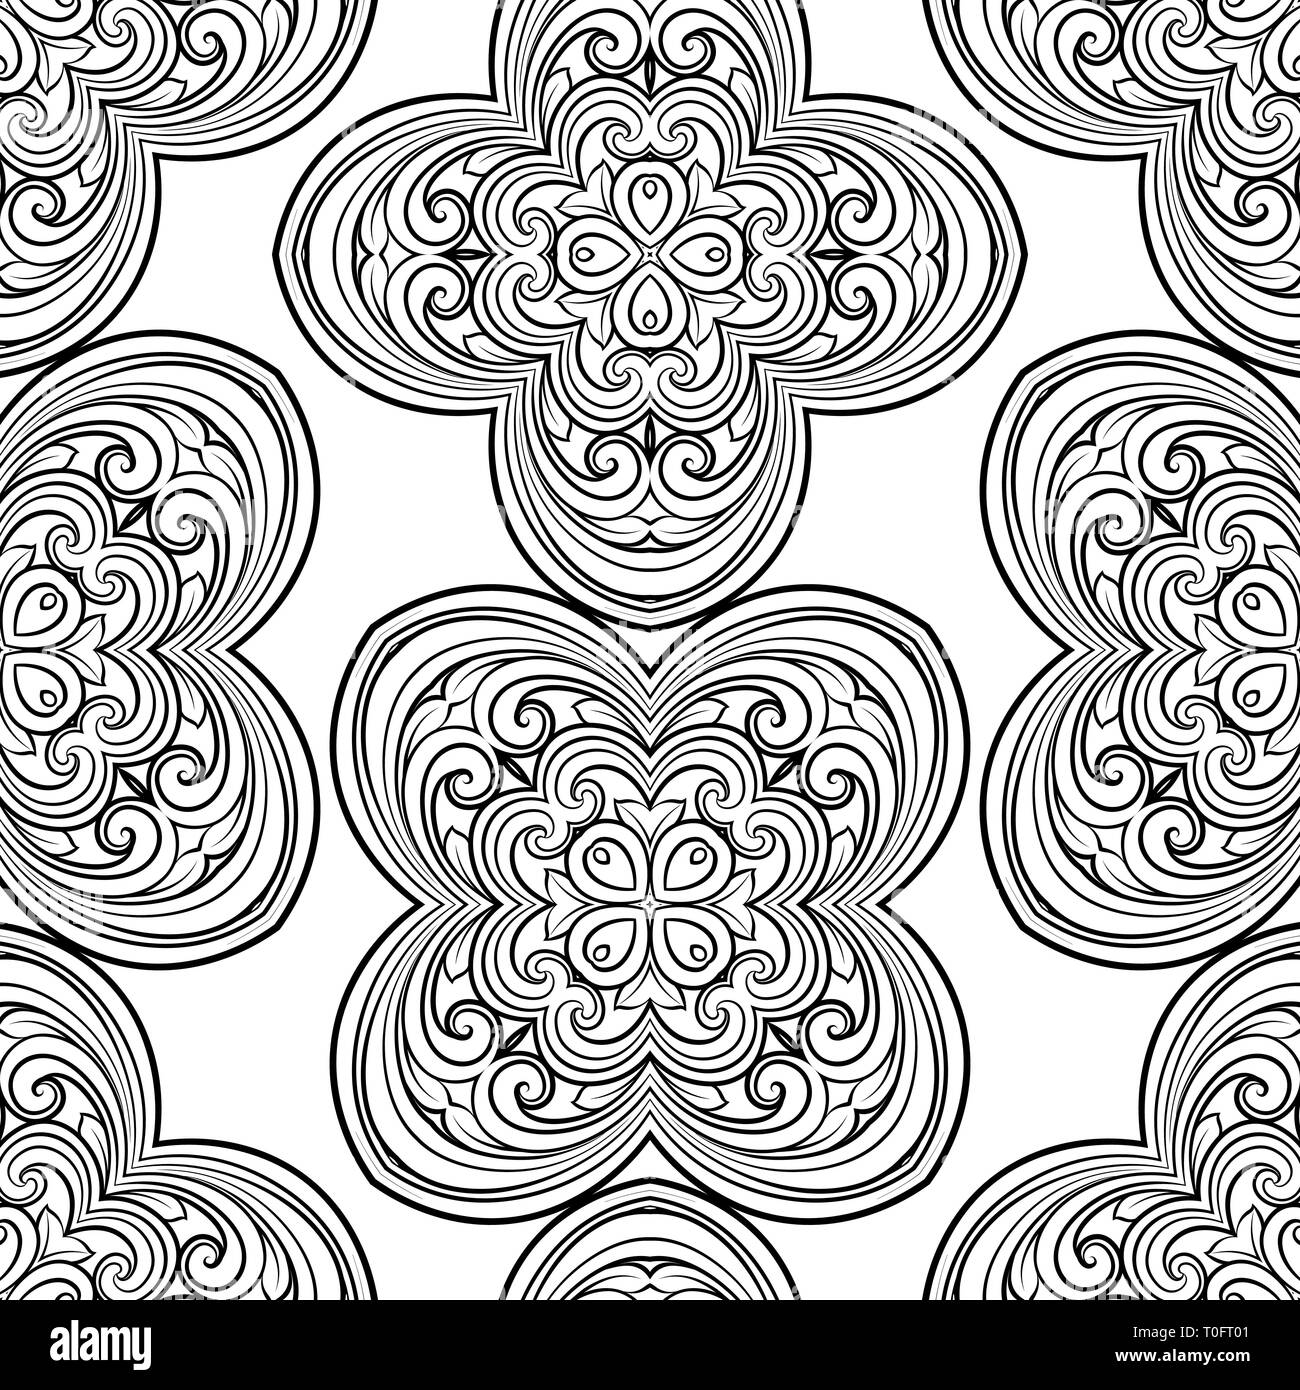 Patrón de línea geométrica perfecta en estilo oriental o árabe. Exquisita textura monocroma. Fondo gráfico en blanco y negro, patrón de encaje. Ilustración del Vector